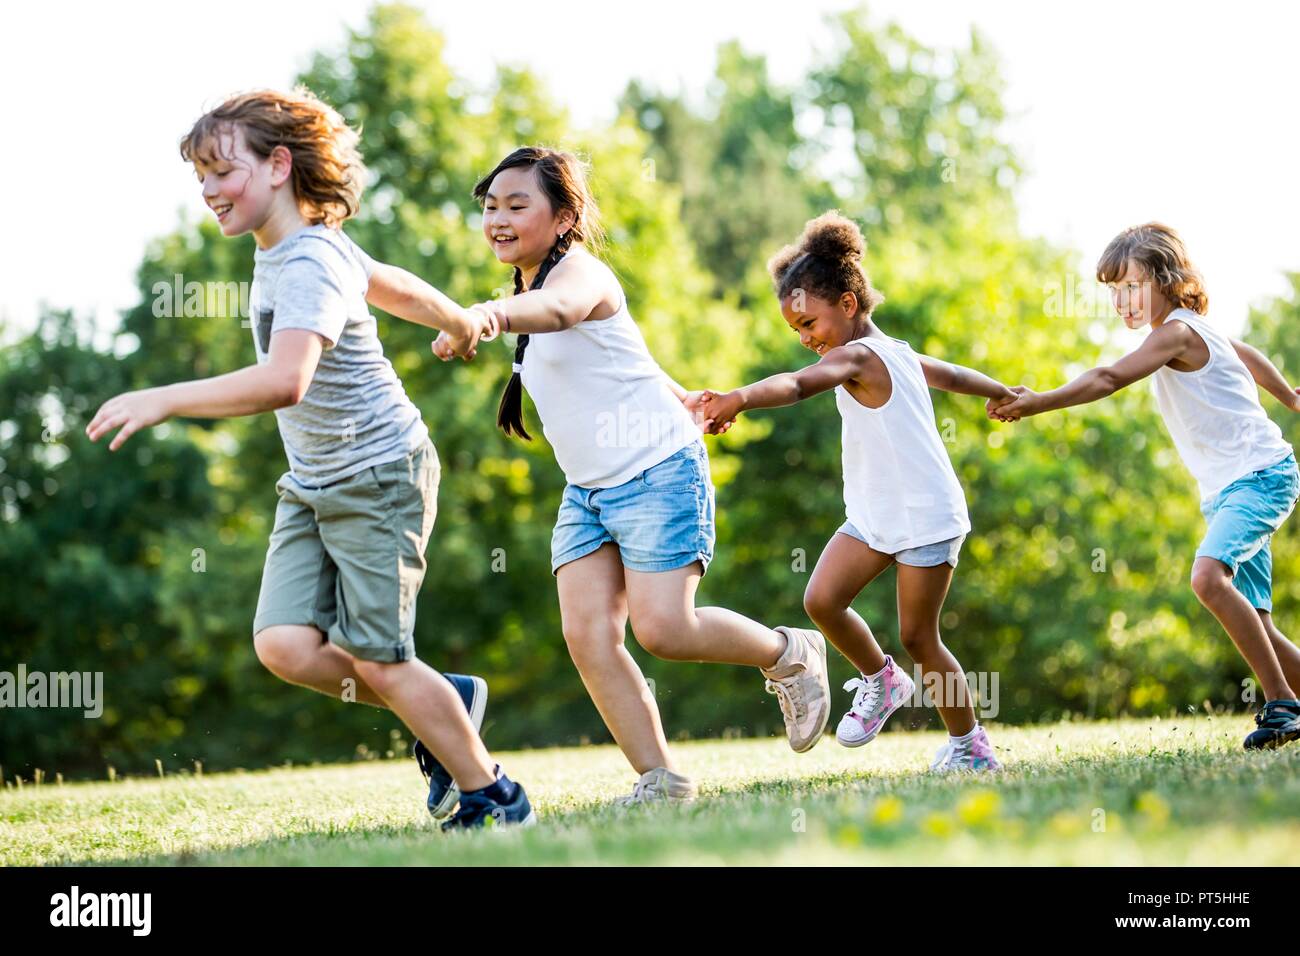 Los niños tomados de las manos y corriendo en el parque, sonriendo. Foto de stock